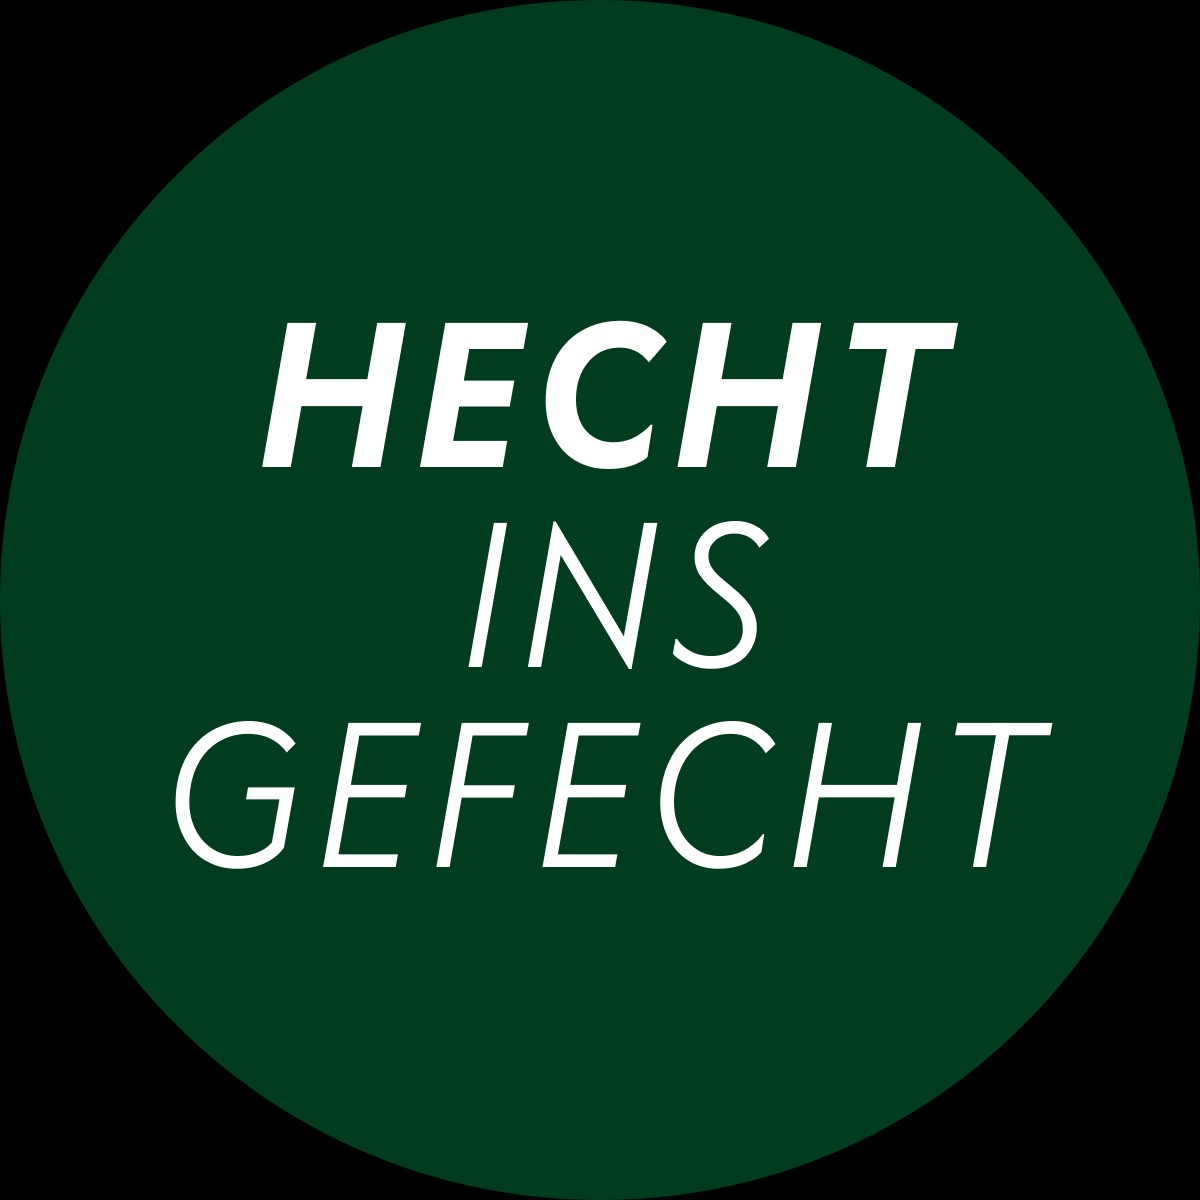 HECHT INS GEFECHT Logo